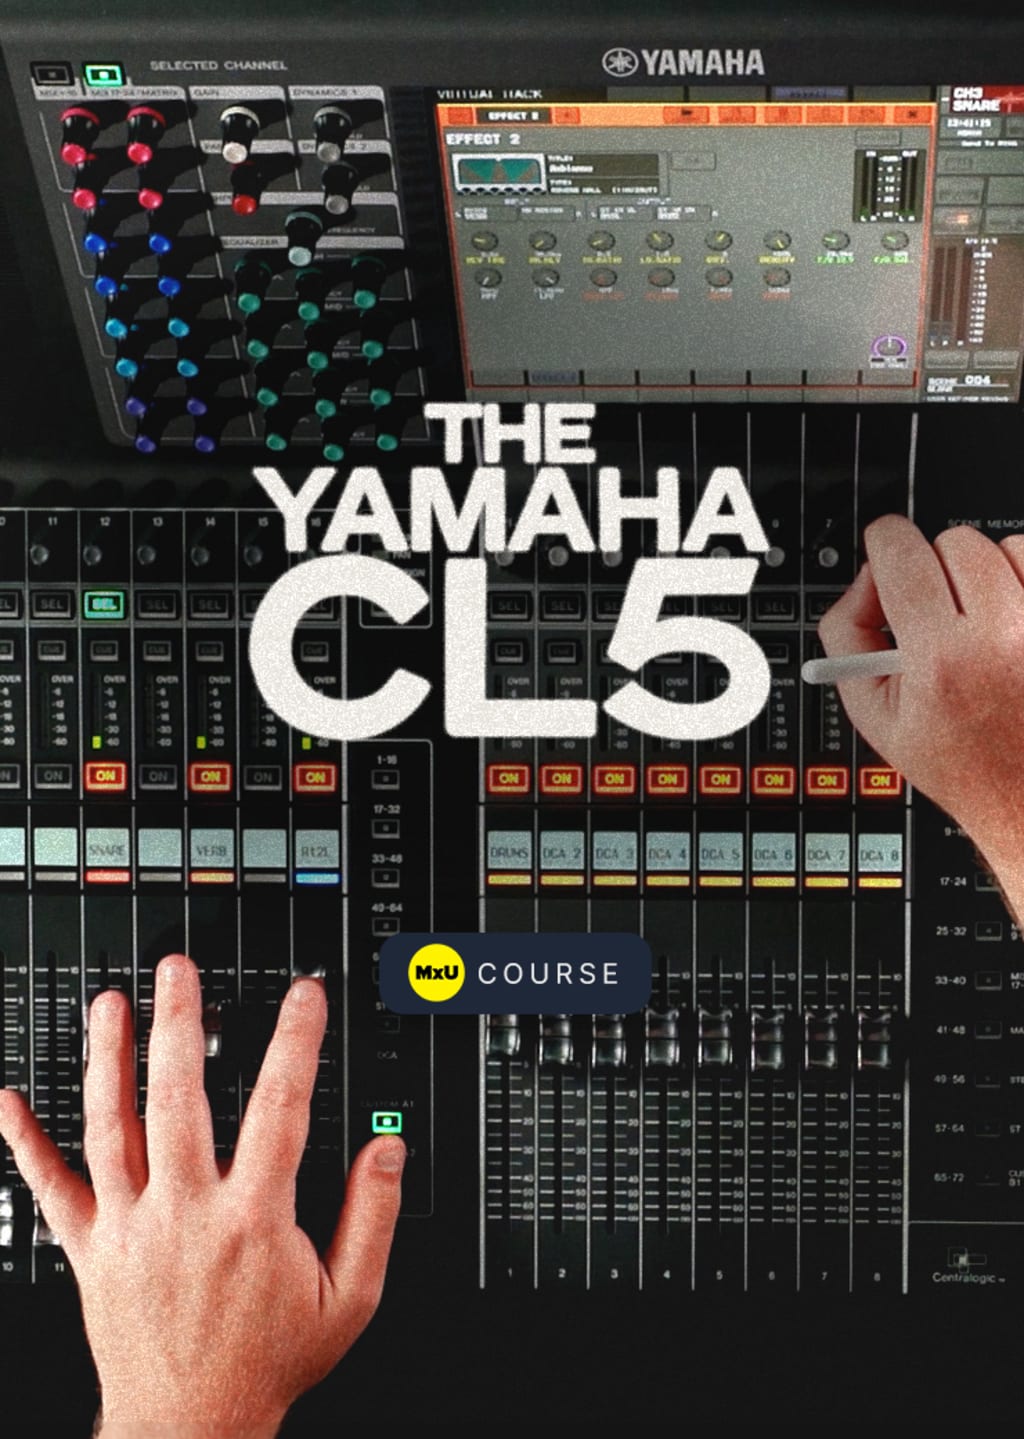 The Yamaha CL5